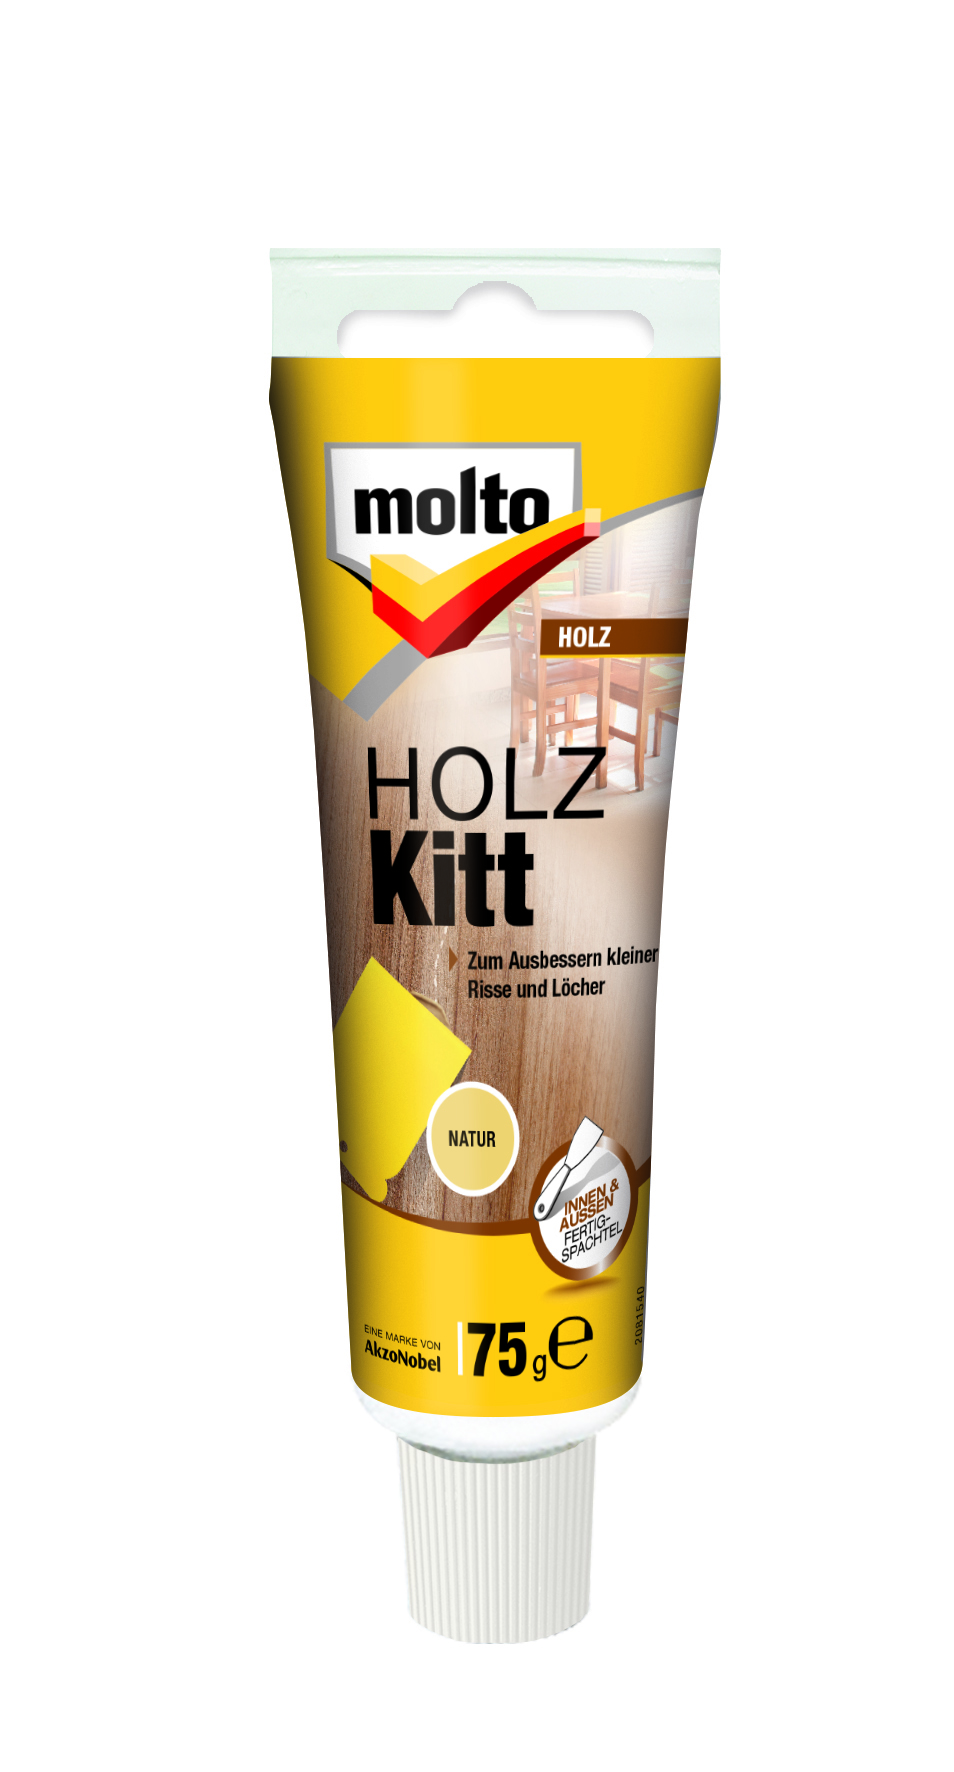 MOLTO HOLZ-KITT NATUR 75 G